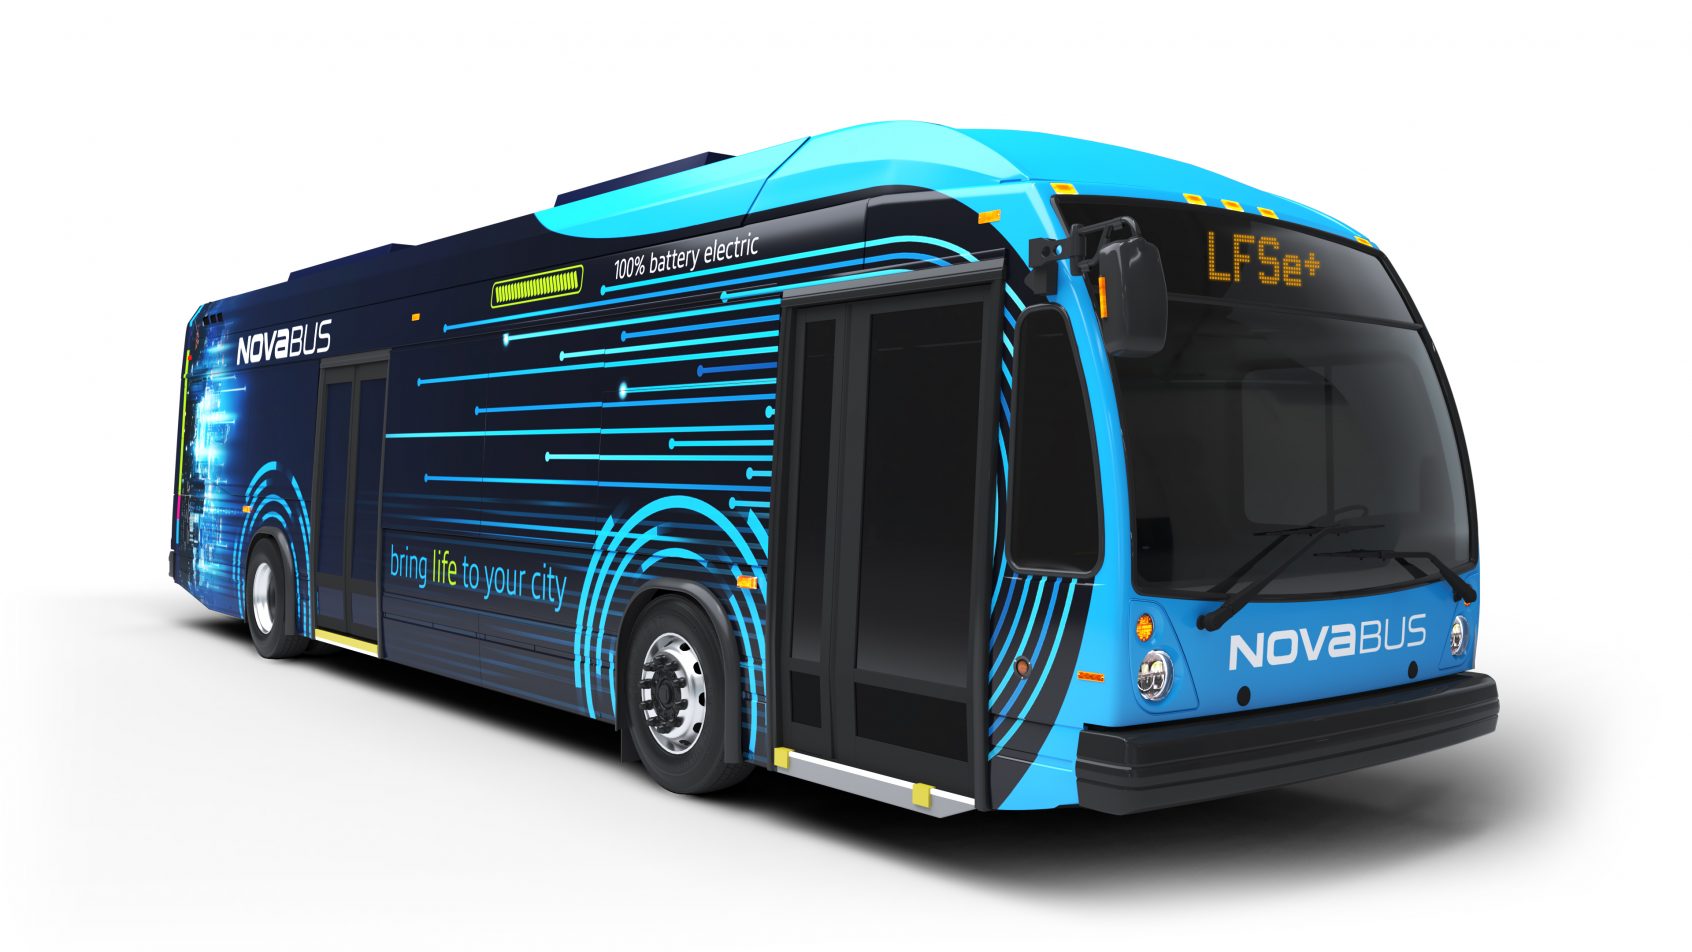 Nova Bus dévoile son nouvel autobus électrique à longue autonomie, le LFSe+, sur le marché nord-américain